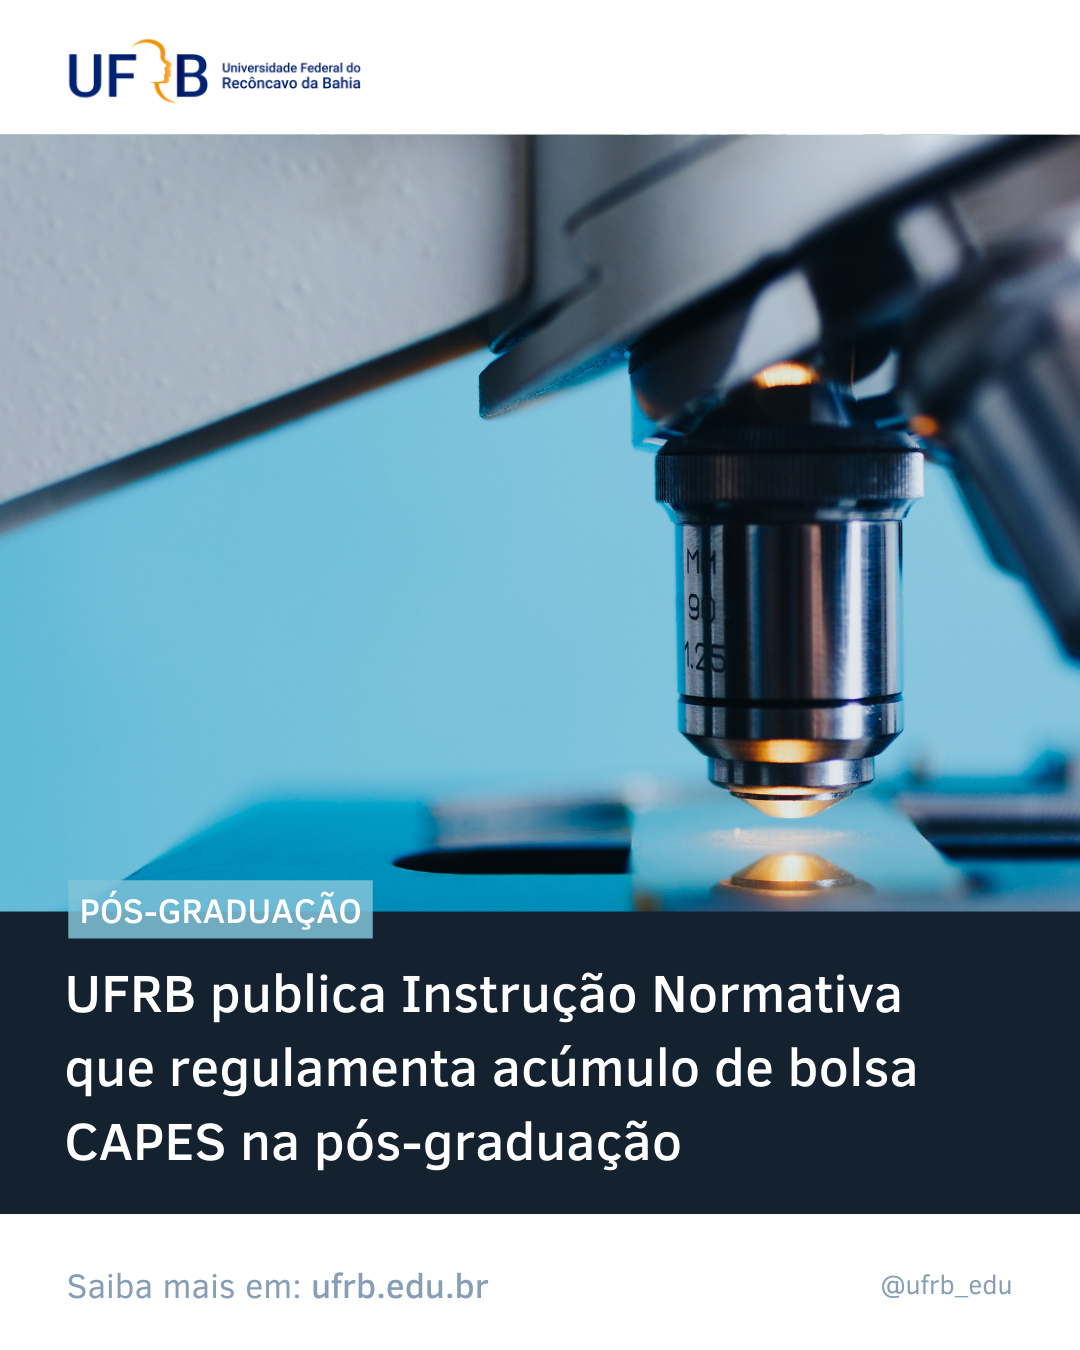 UFRB publica Instrução Normativa que regulamenta acúmulo de bolsa CAPES na pós-graduação